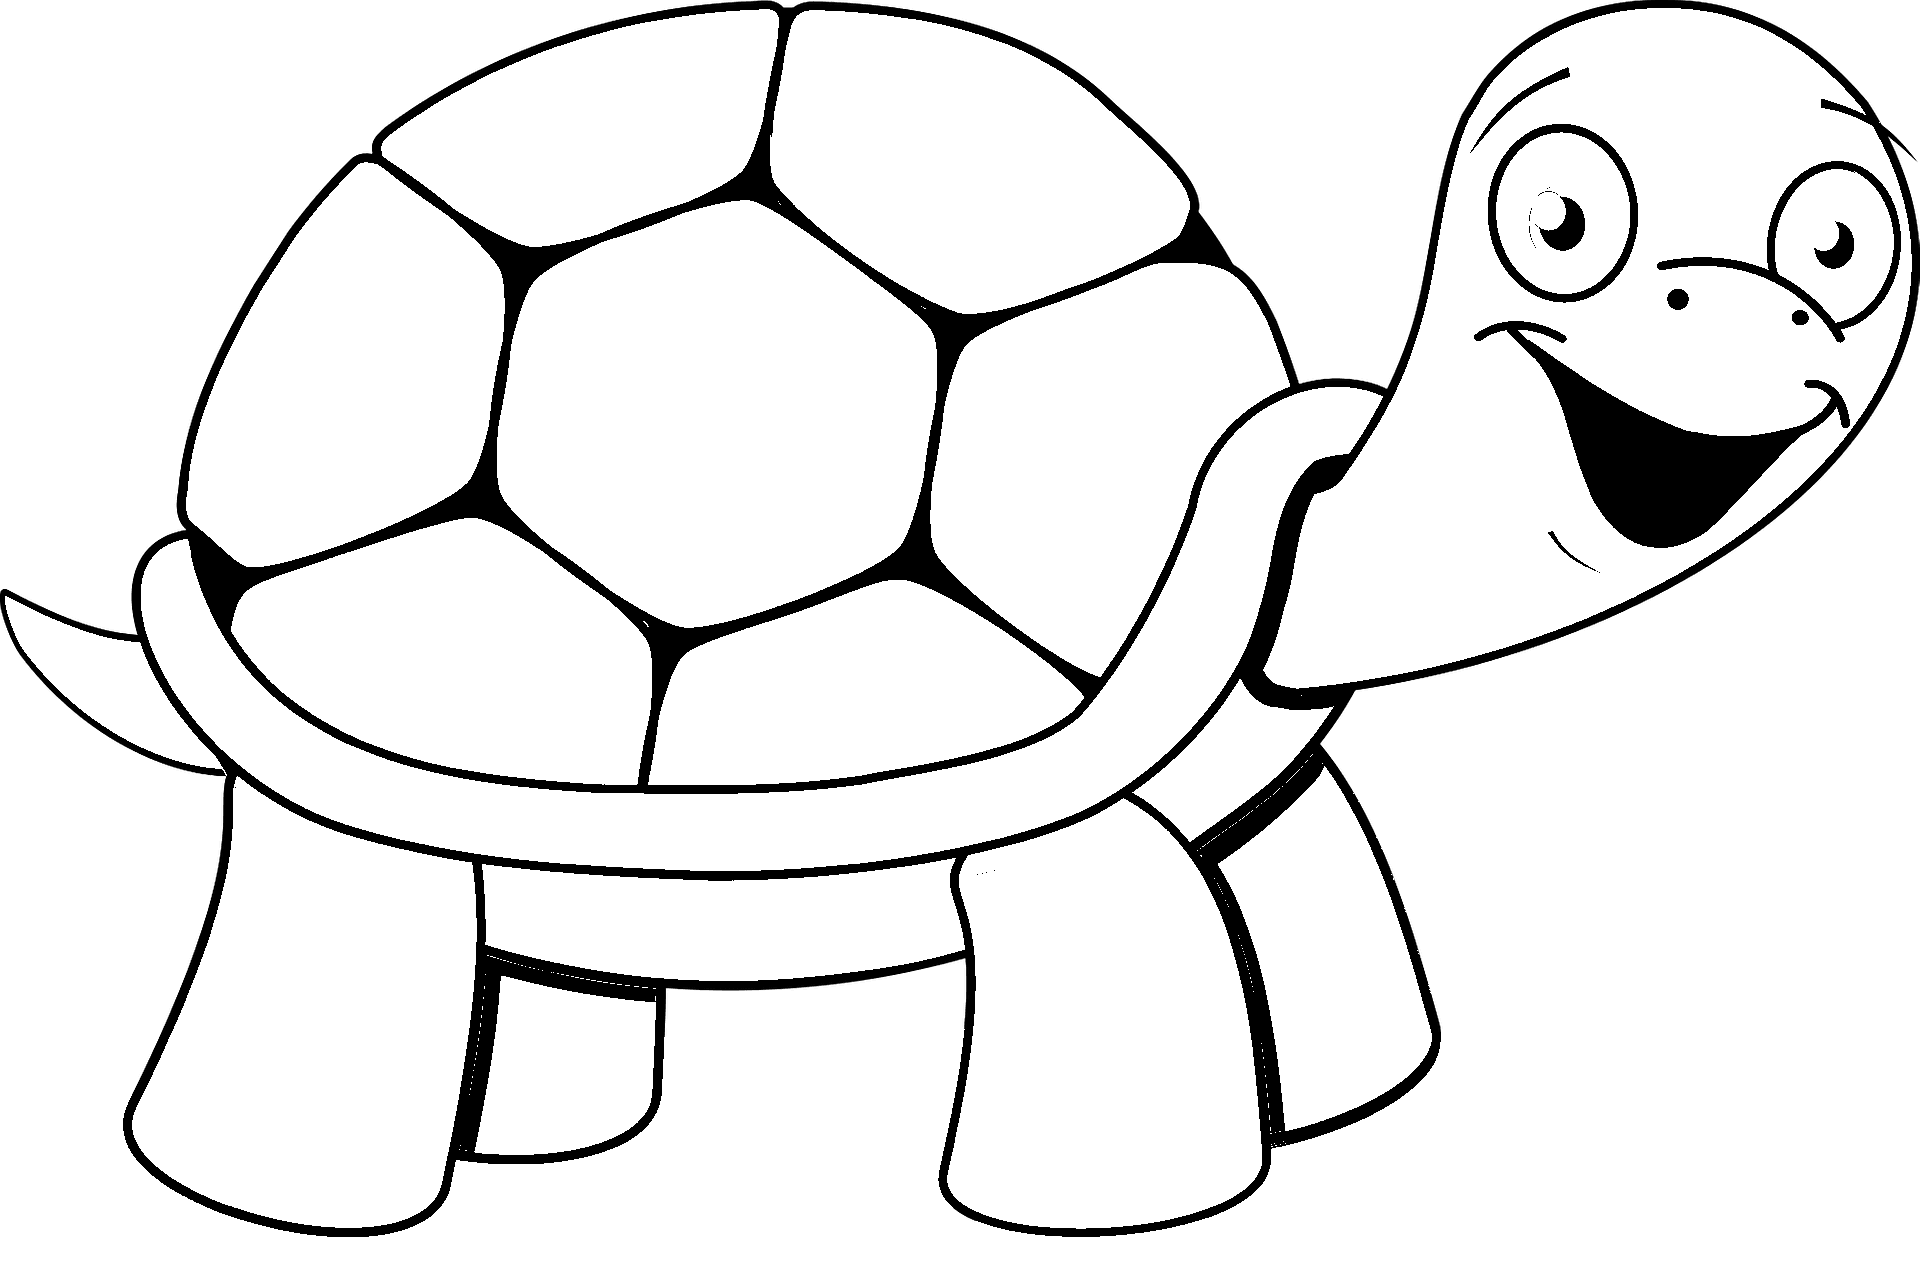 Disegno da colorare di una tartaruga